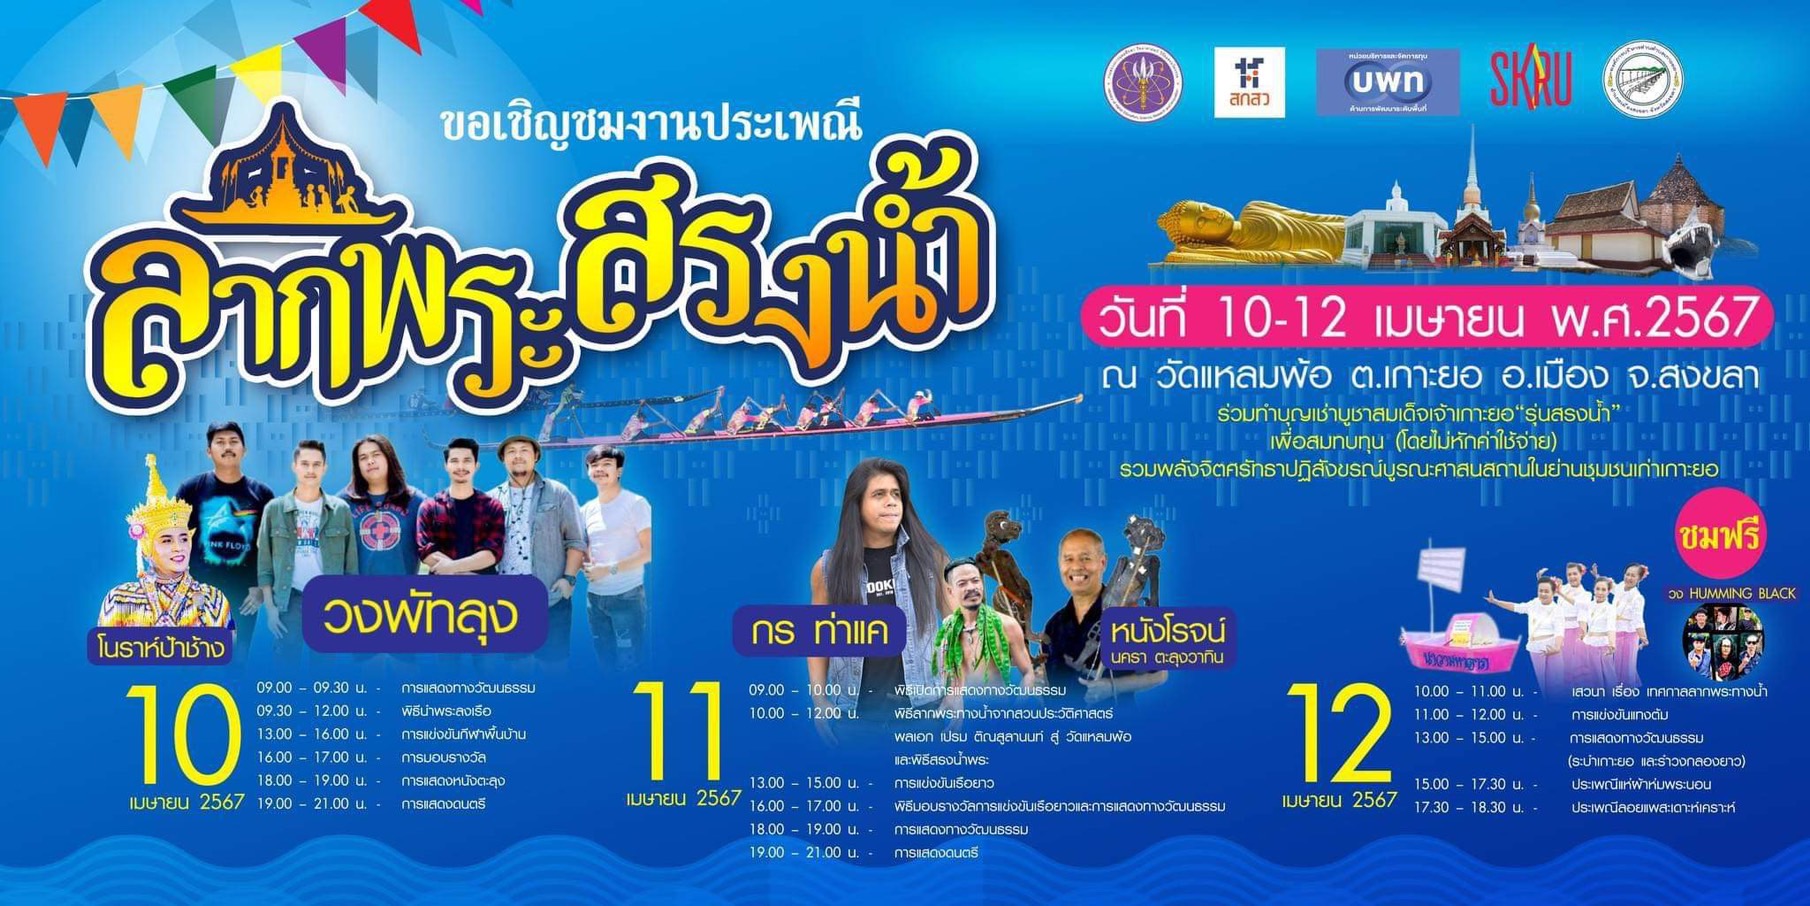 แนะนำงานเทศกาล ประเพณีและกิจกรรมที่น่าสนใจทั่วไทยเดือนเมษายน 2567